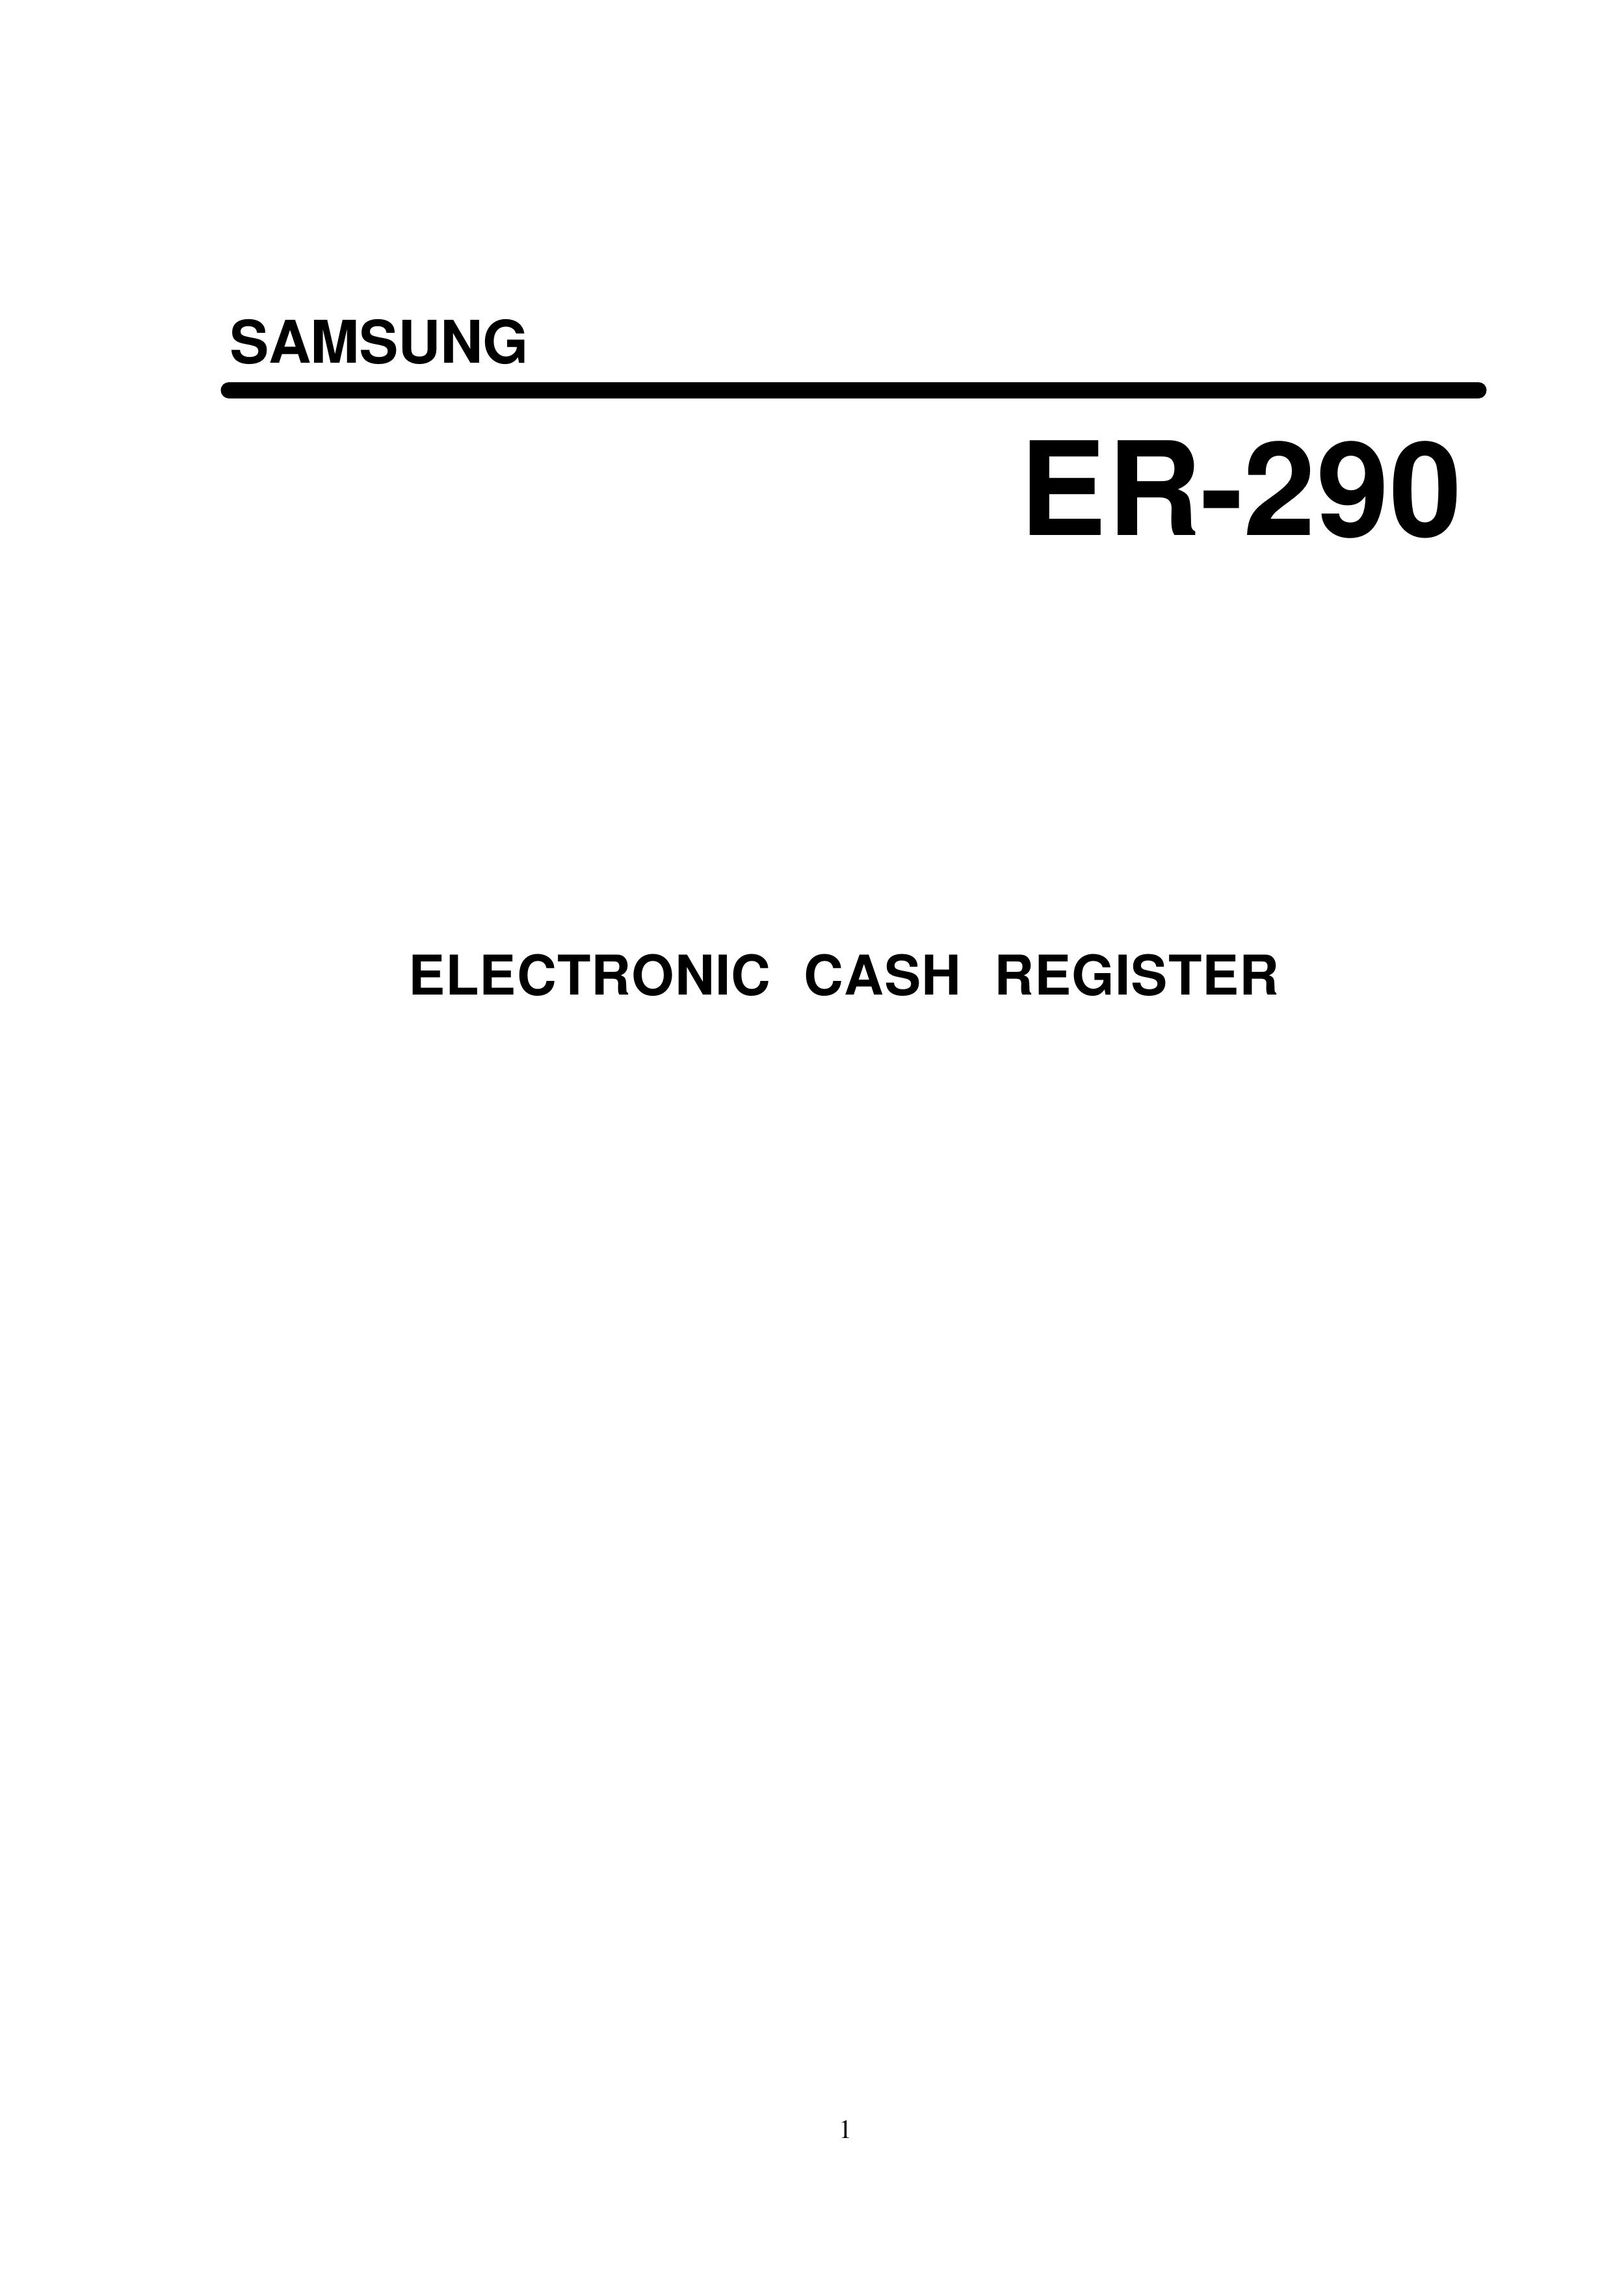 Samsung ER-290 Cash Register User Manual